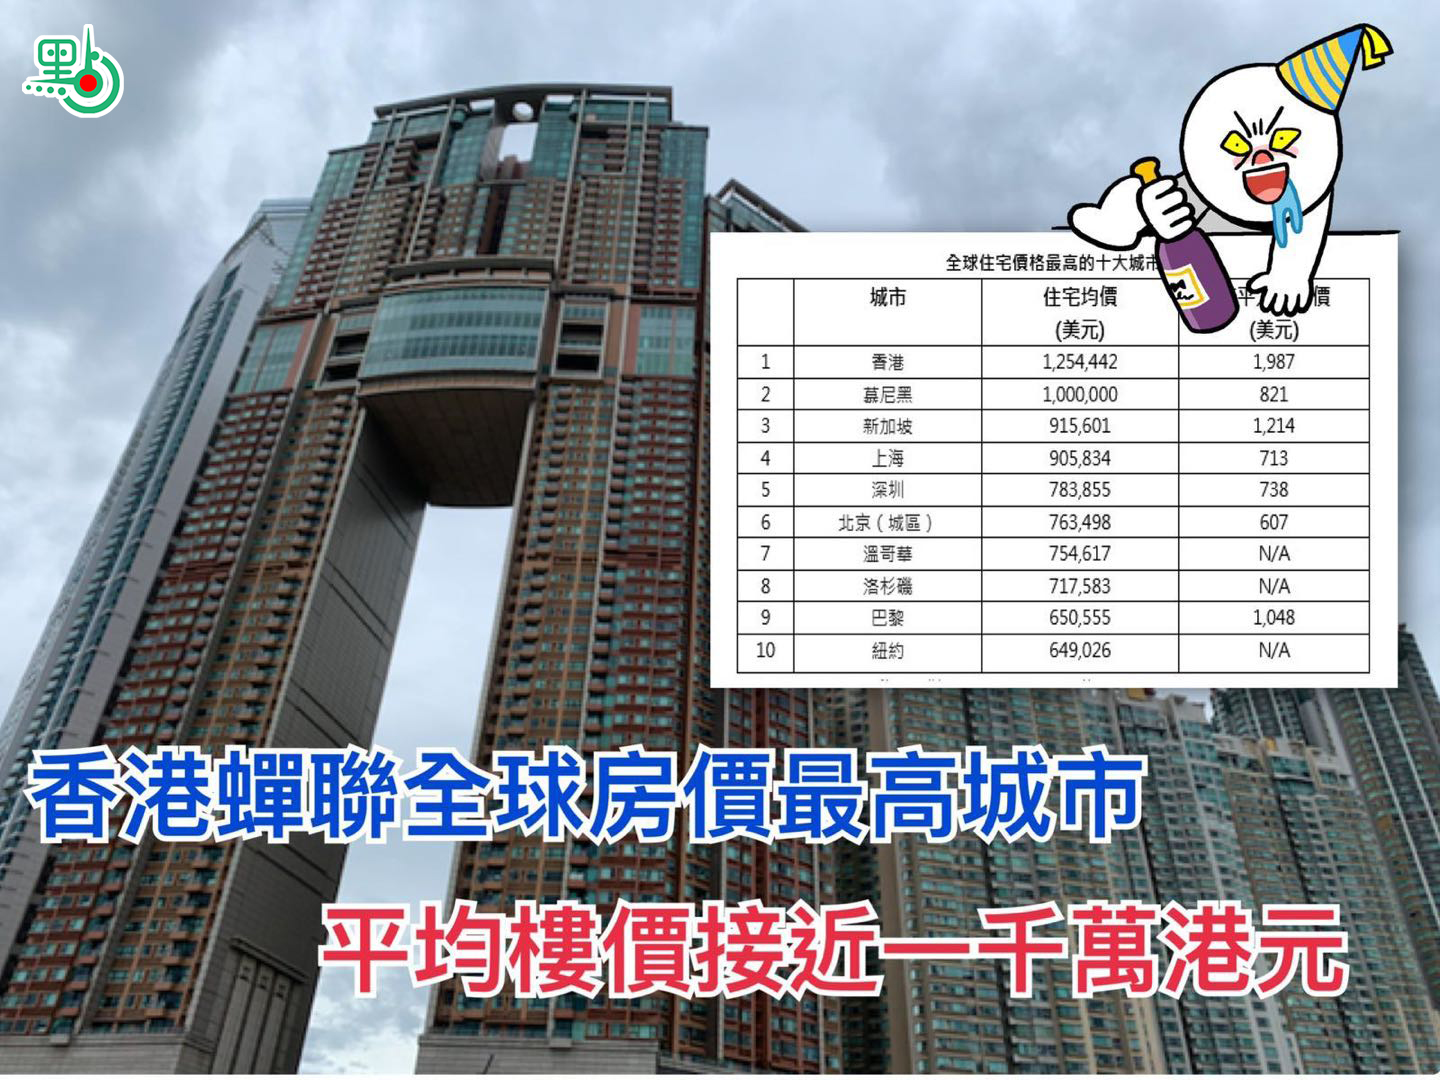 2019年全球住宅價格最高的十大城市中有一半位於亞洲A香港以接近1,000萬港元的住宅均價蟬聯u全球房價最高城市vC